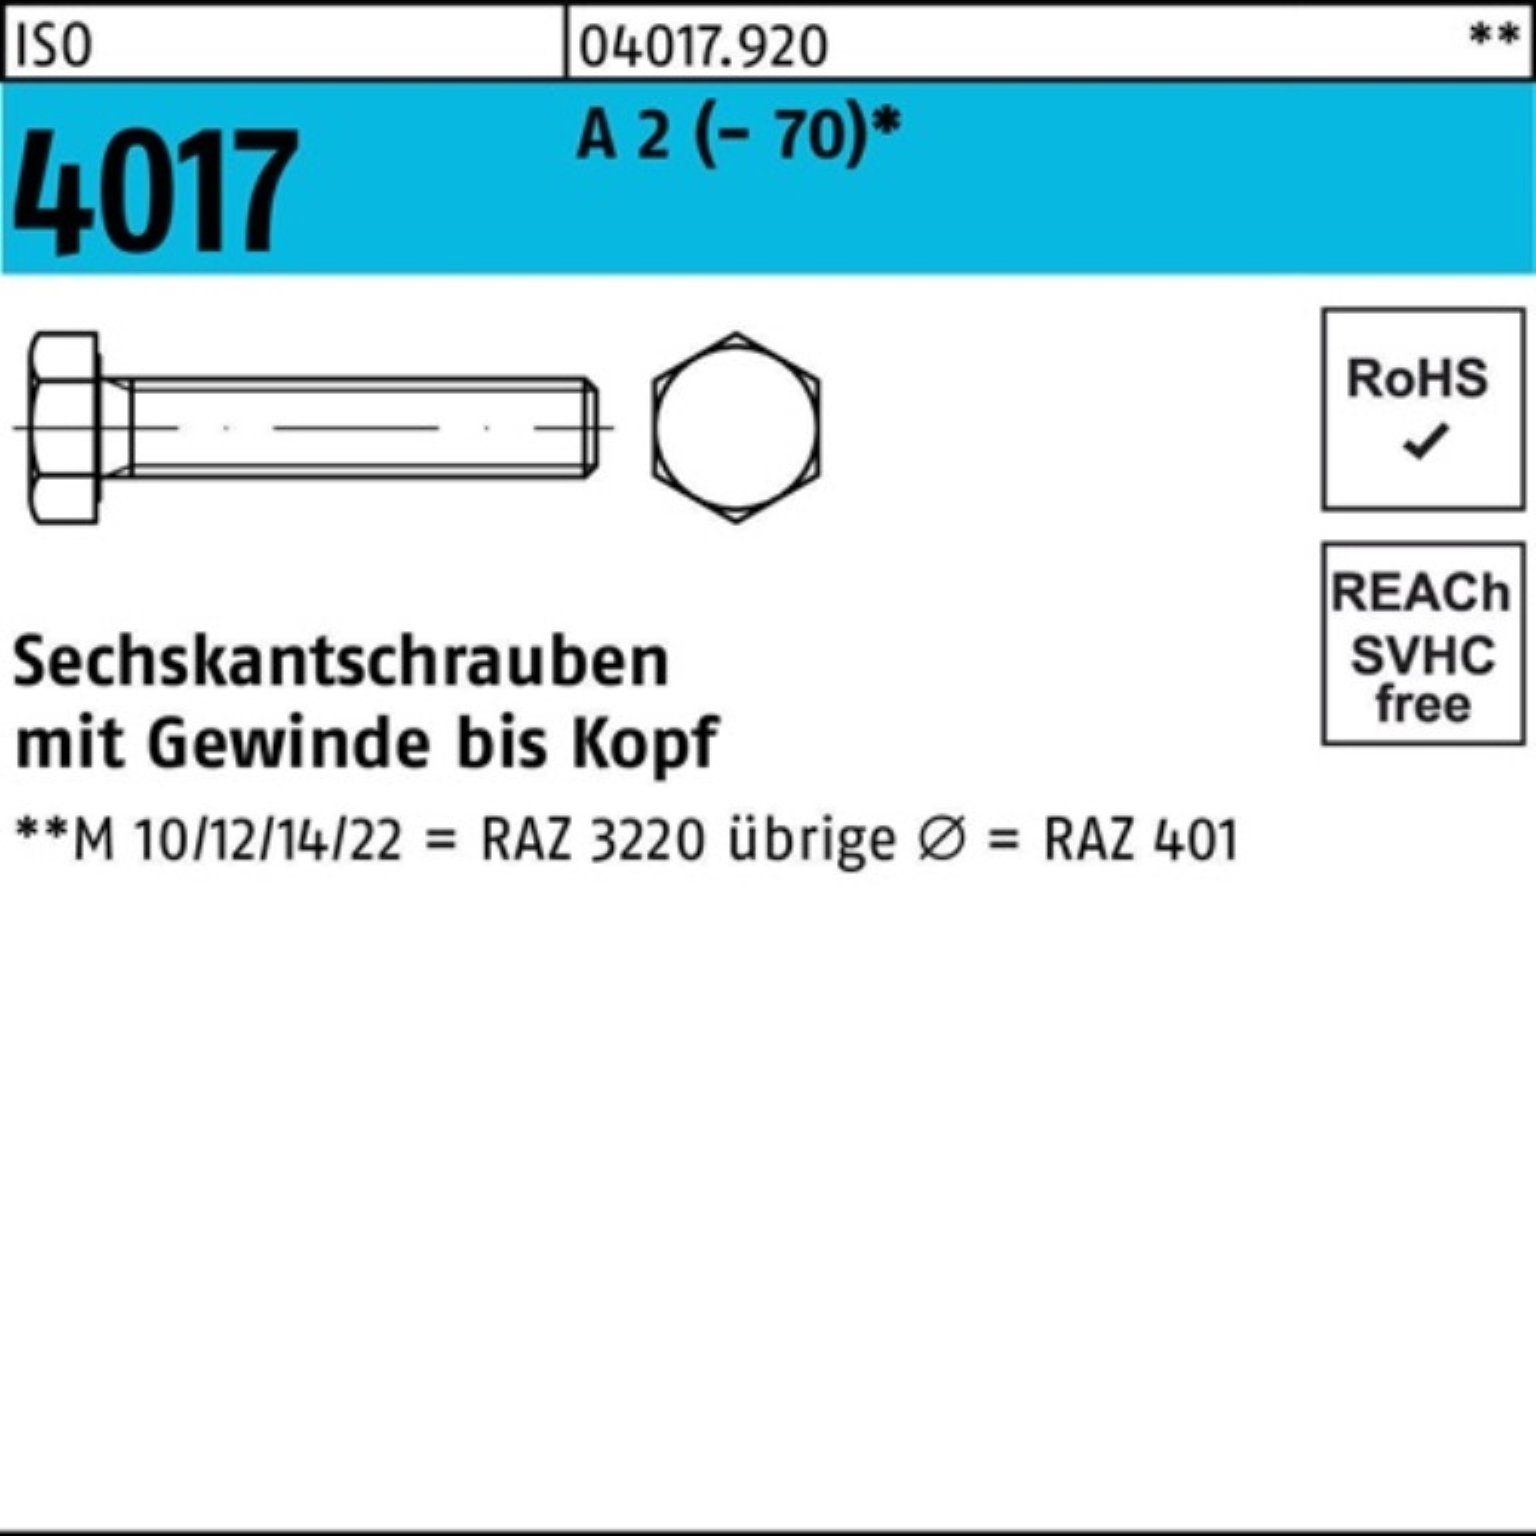 Bufab Sechskantschraube 100er Pack Sechskantschraube ISO 4017 VG M12x 20 A 2 (70) 100 Stück